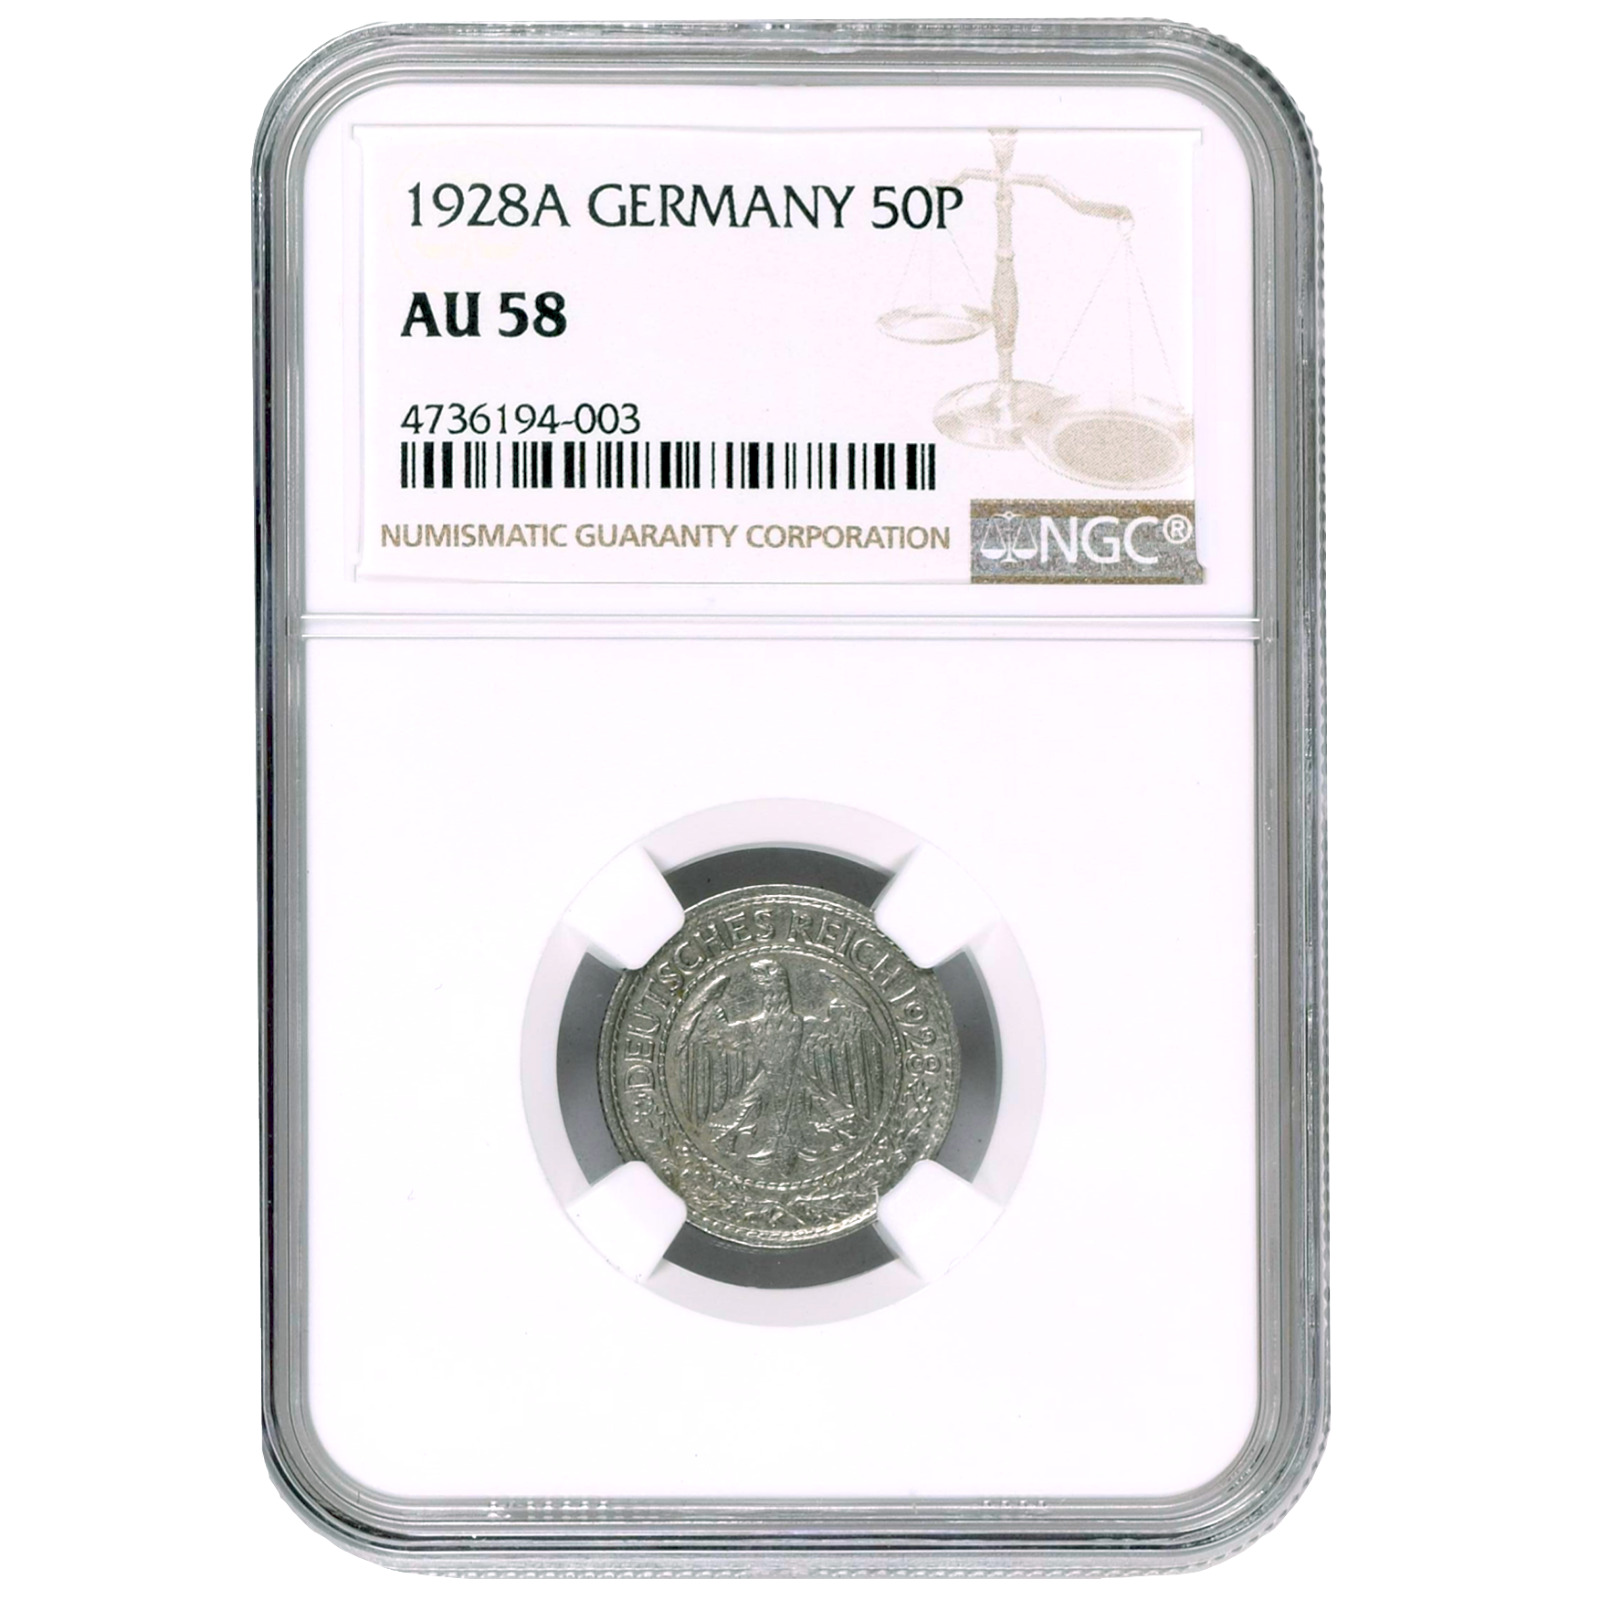 Germany 50 Reichspfennig 1928a (mintmark Berlin) Ngc Au58 Km #49